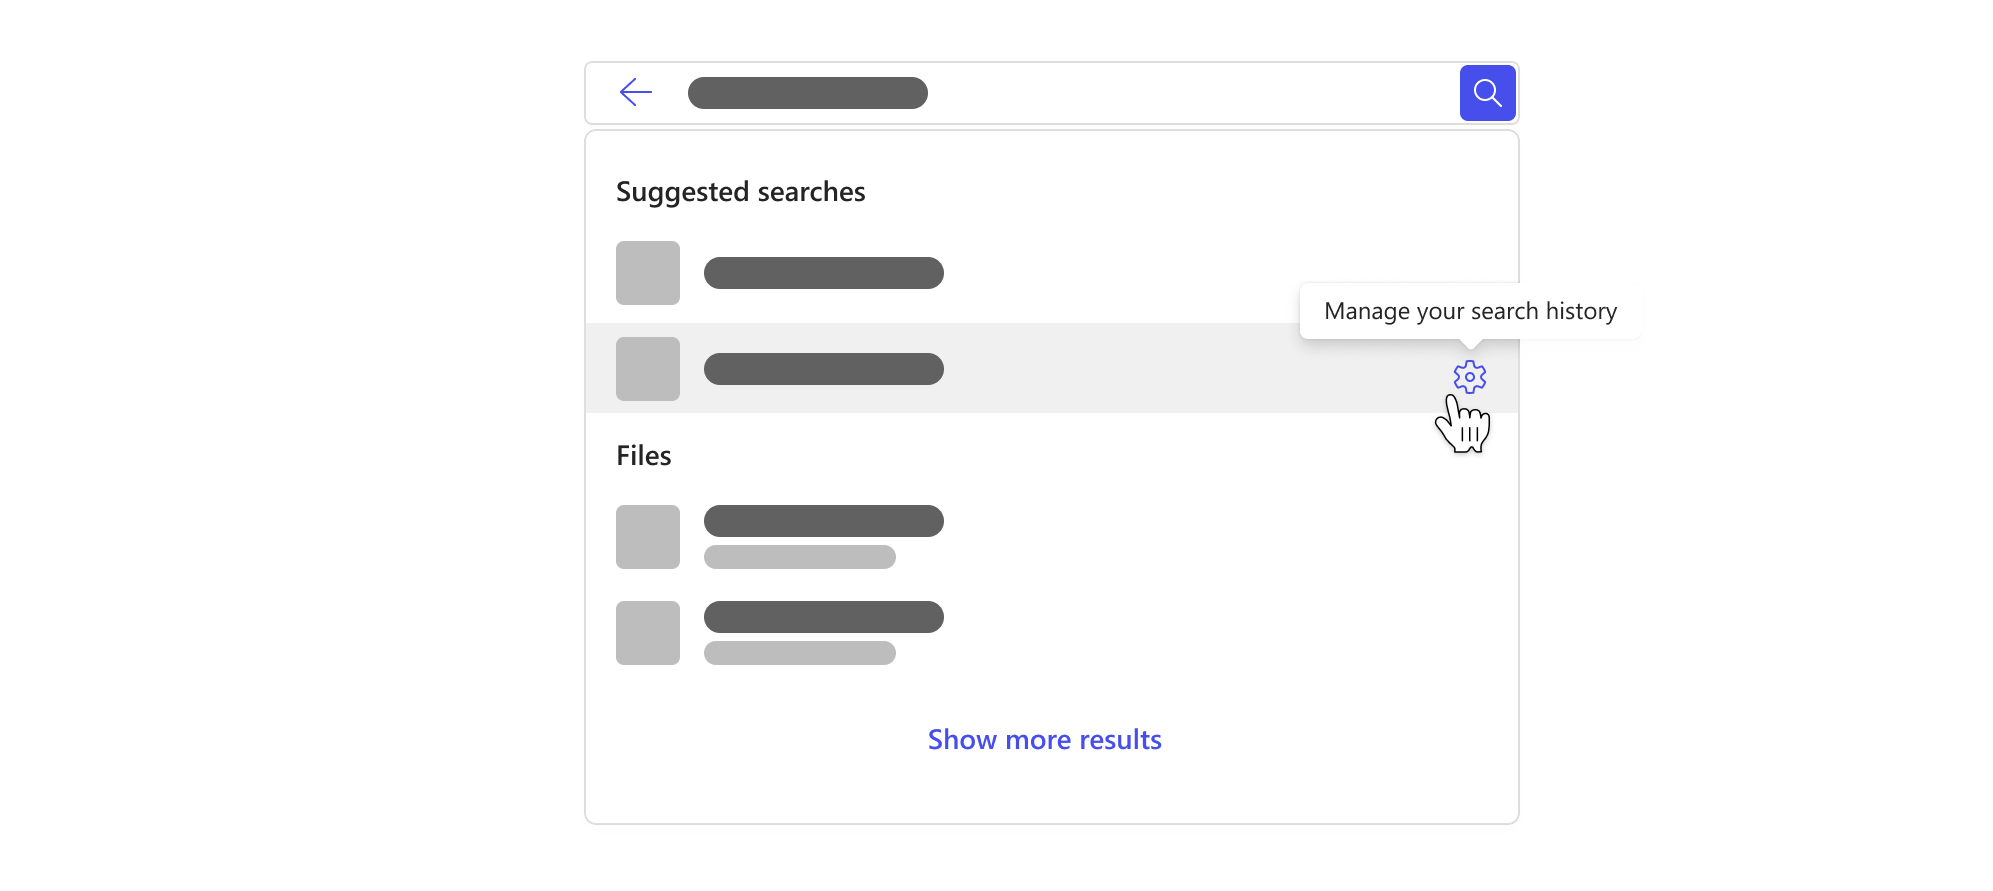 Sökrutan med en listruta som markerar de föreslagna sökningarna baserat på din sökhistorik och en knapp för att hantera din sökhistorik.